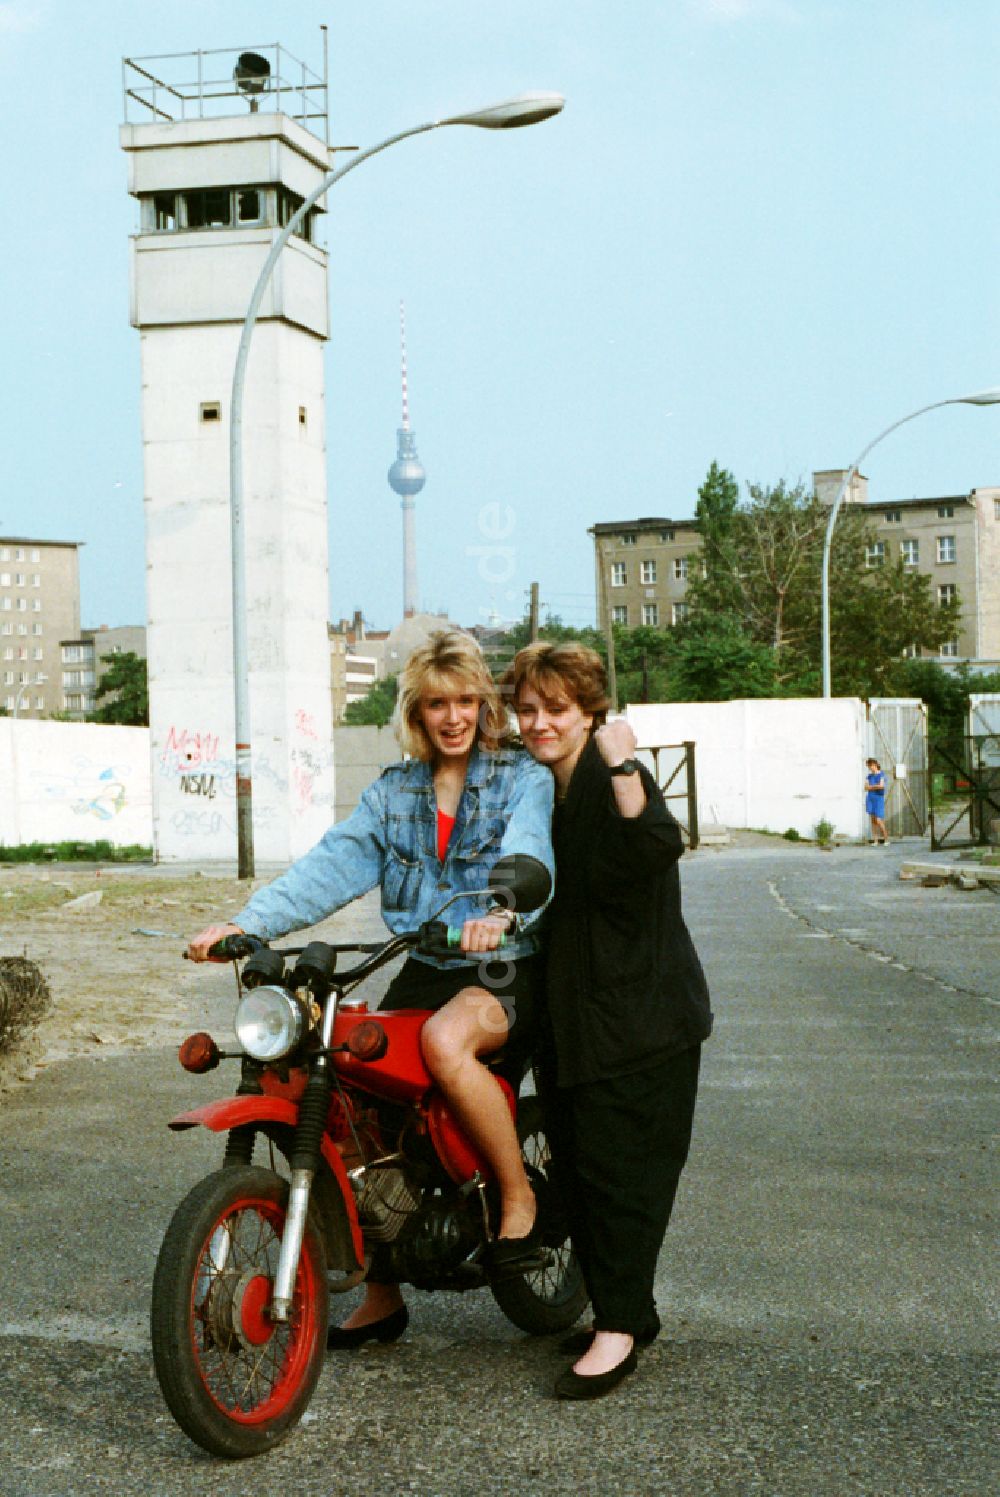 DDR-Fotoarchiv: Berlin - Moped vom Typ S50 mit jungen Frauen im ehemaligen Mauerstreifen an der Bernauer Straße in Berlin in der DDR